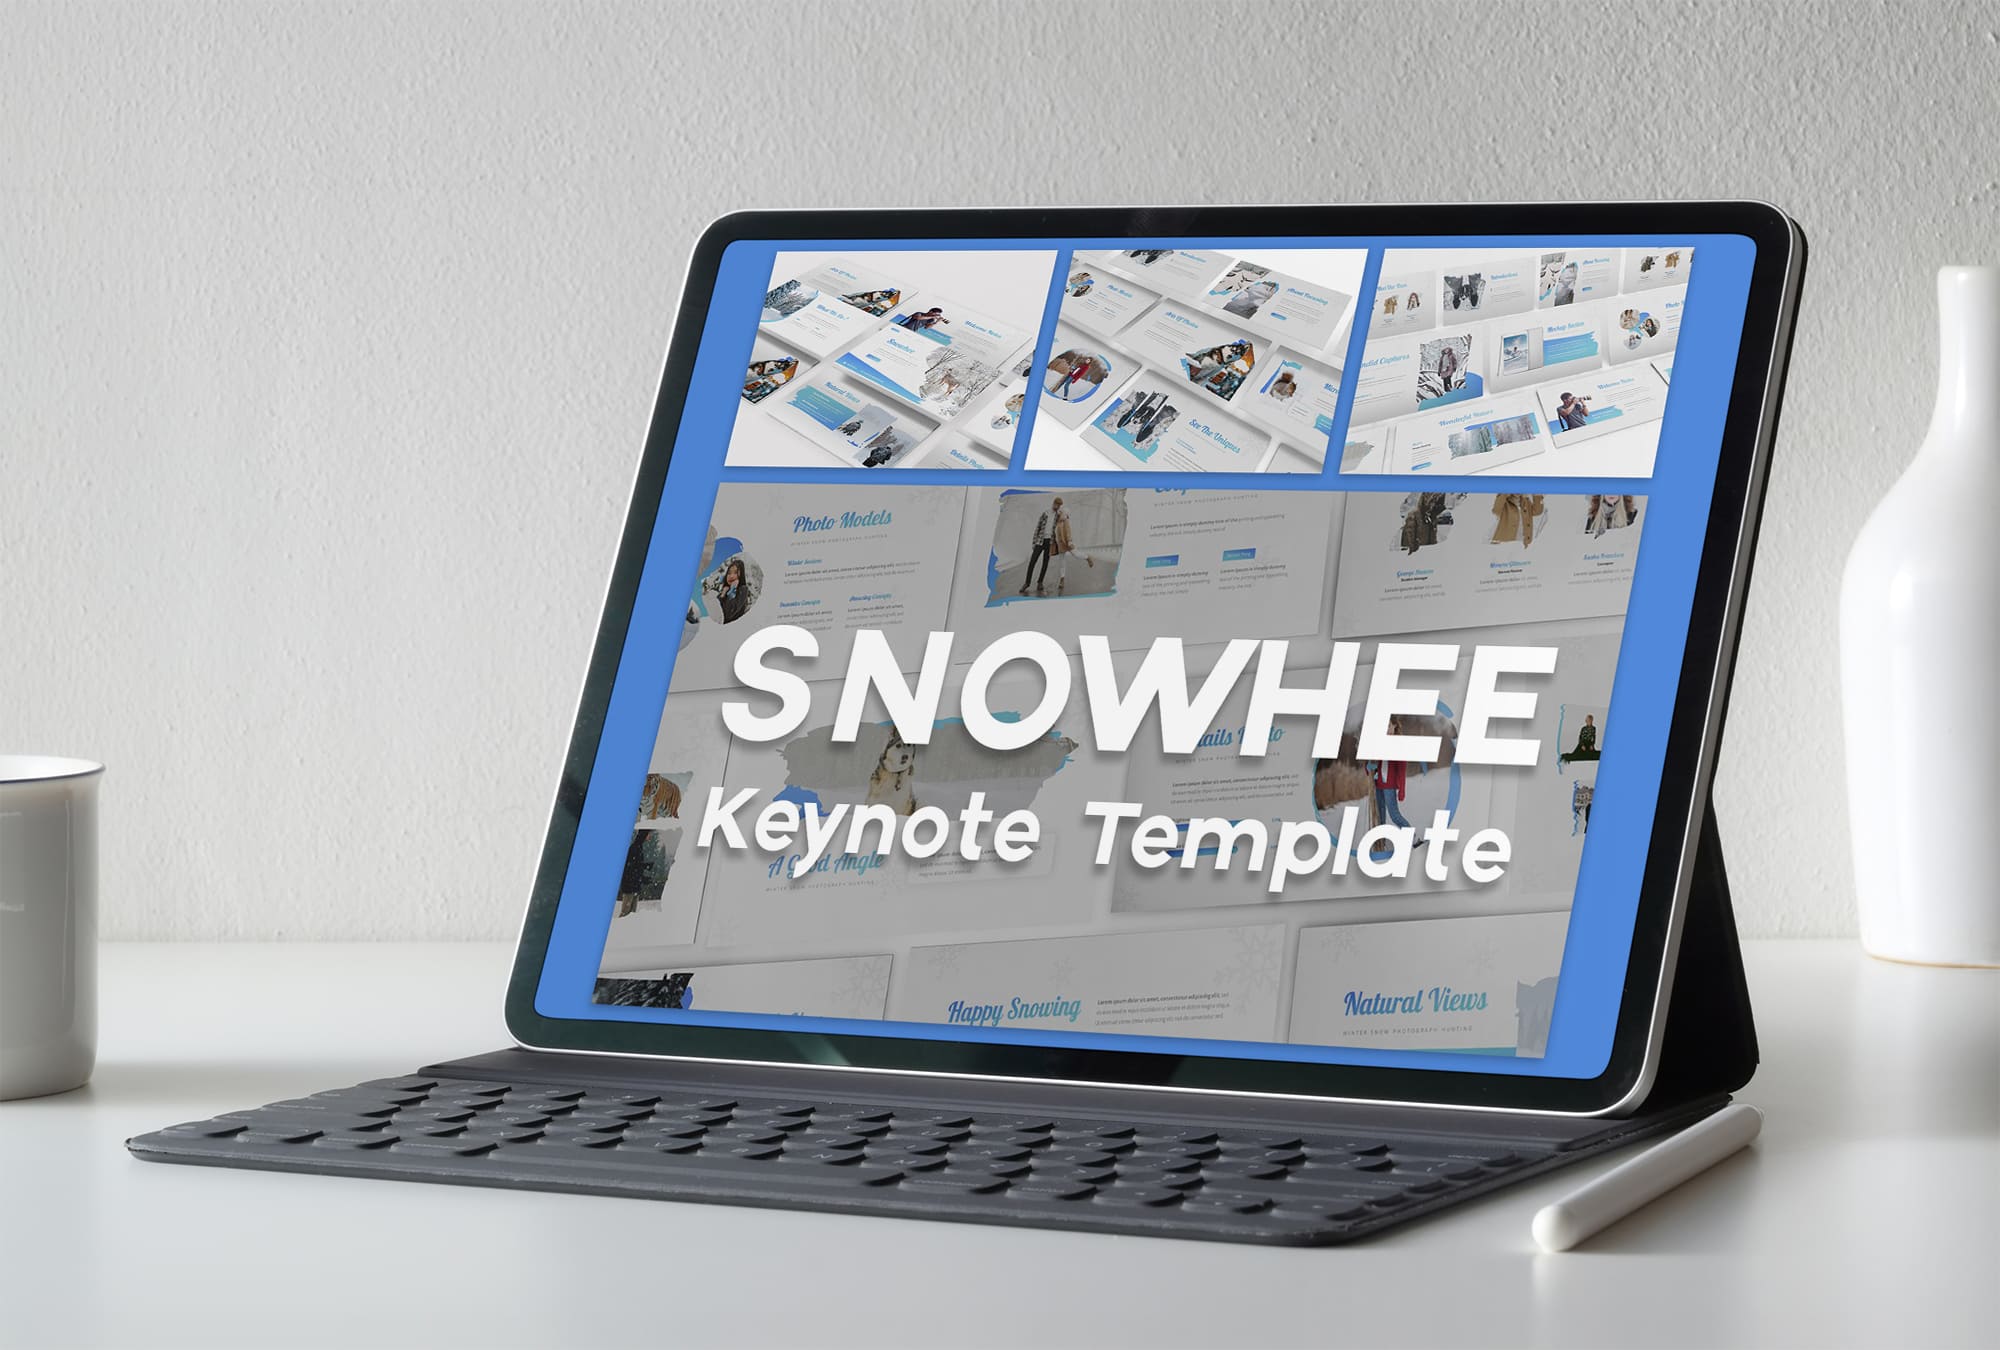 snowhee keynote template tablet mockup.